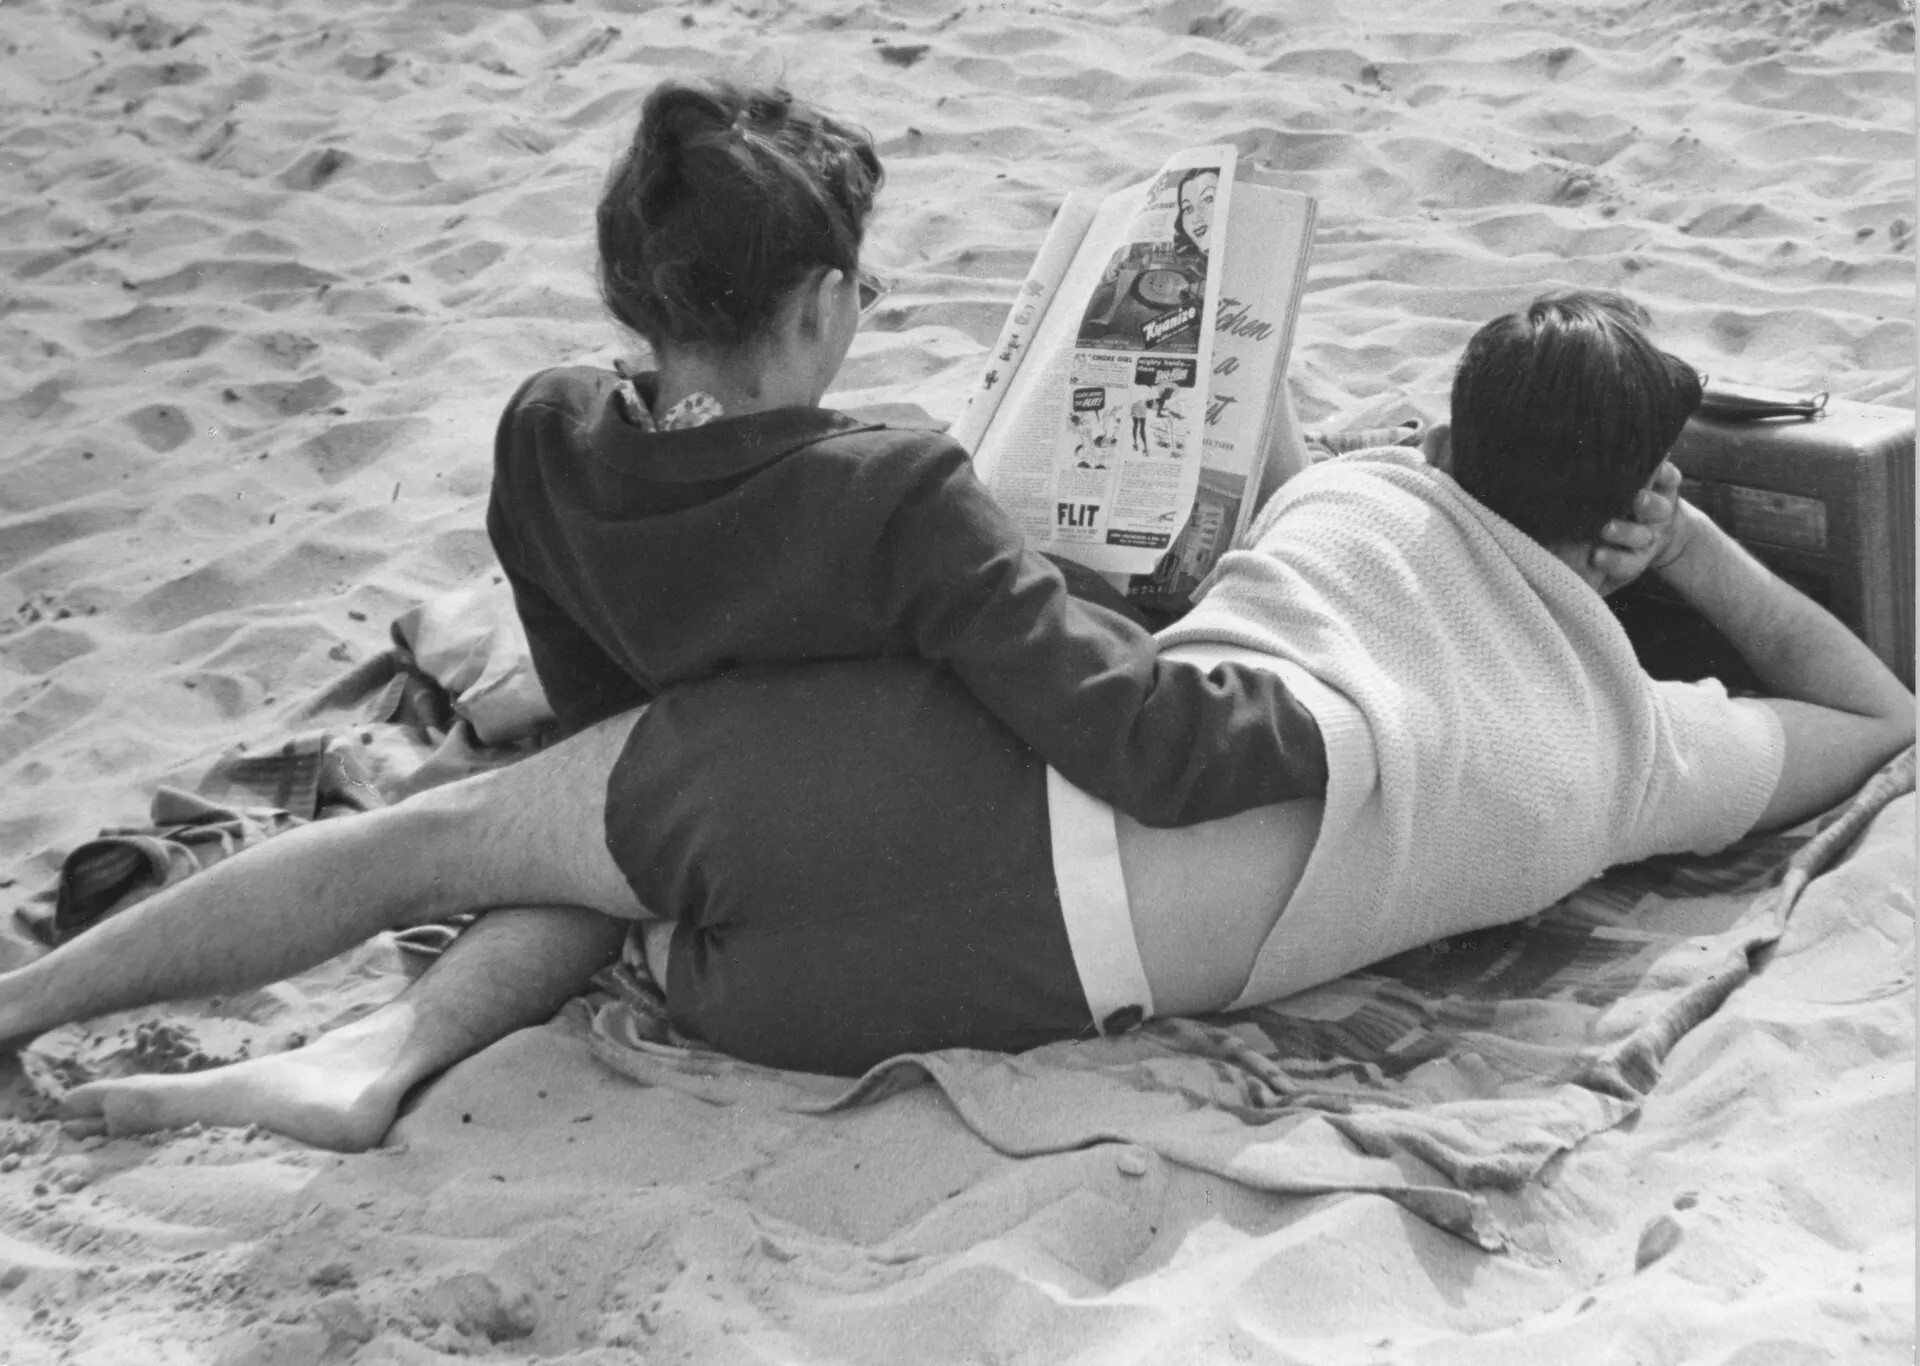 Пара на пляже, Кони-Айленд, Нью-Йорк, 1947. Фотограф Рут Оркин